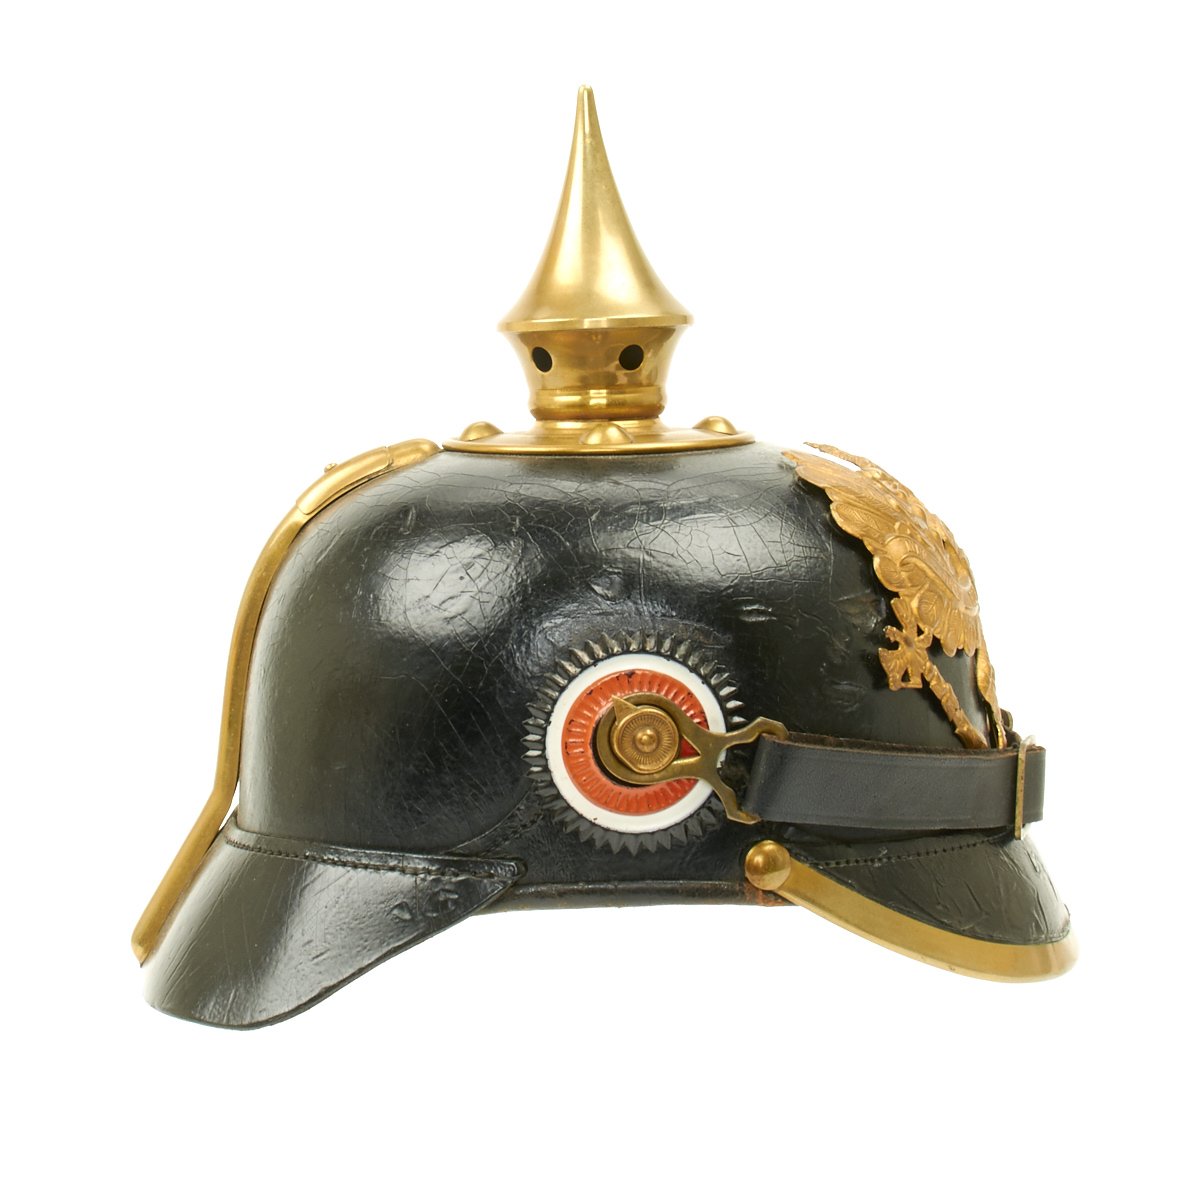 Ww1 German Spiked Helmet For Sale